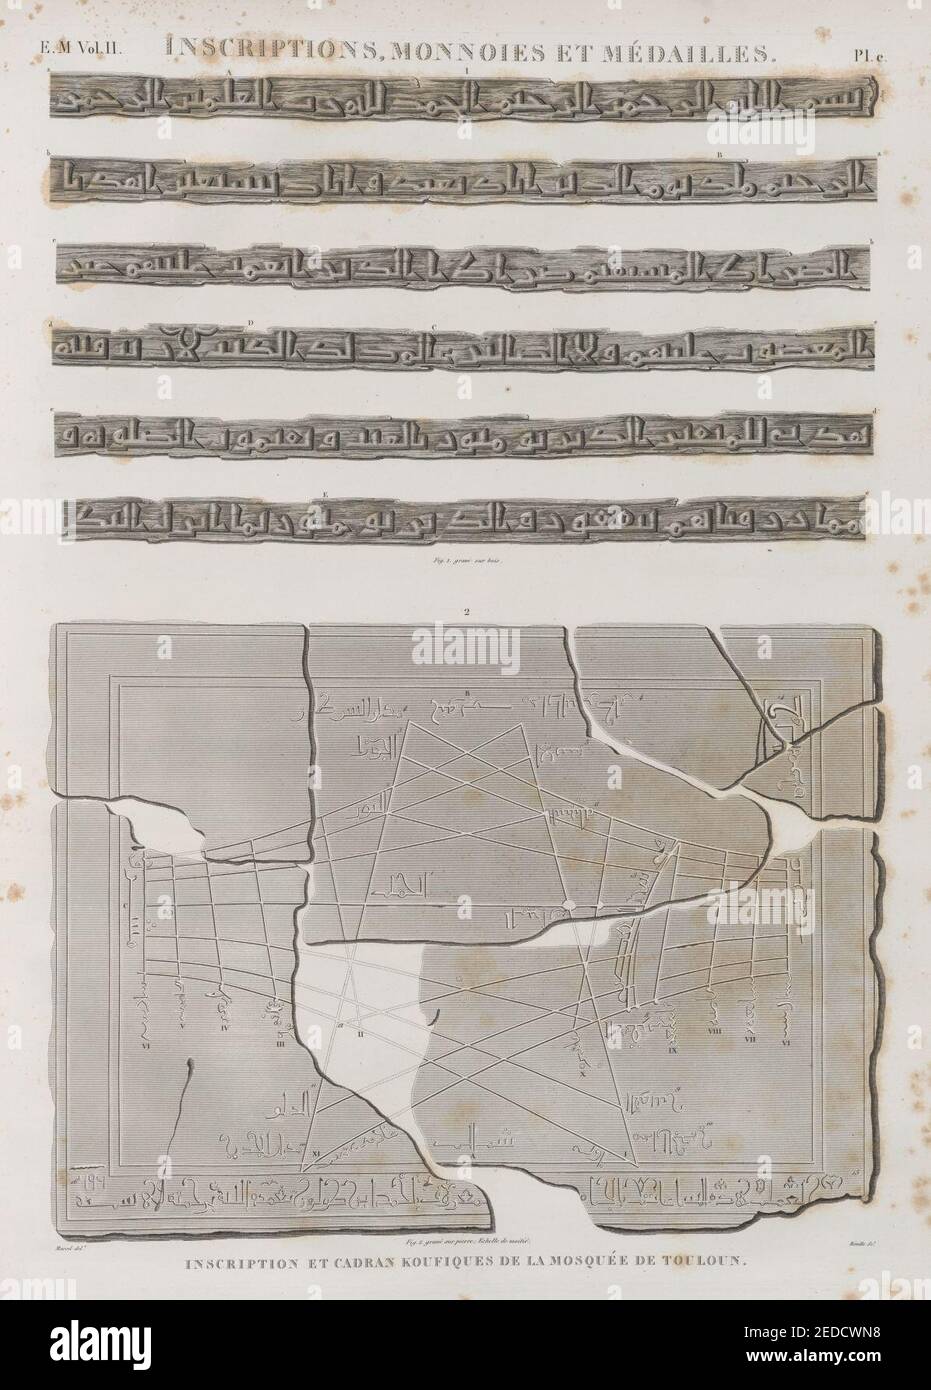 Iscrizioni, monnoies et médailles. Inscription et koufiques de la Mosquée de Touloun Foto Stock